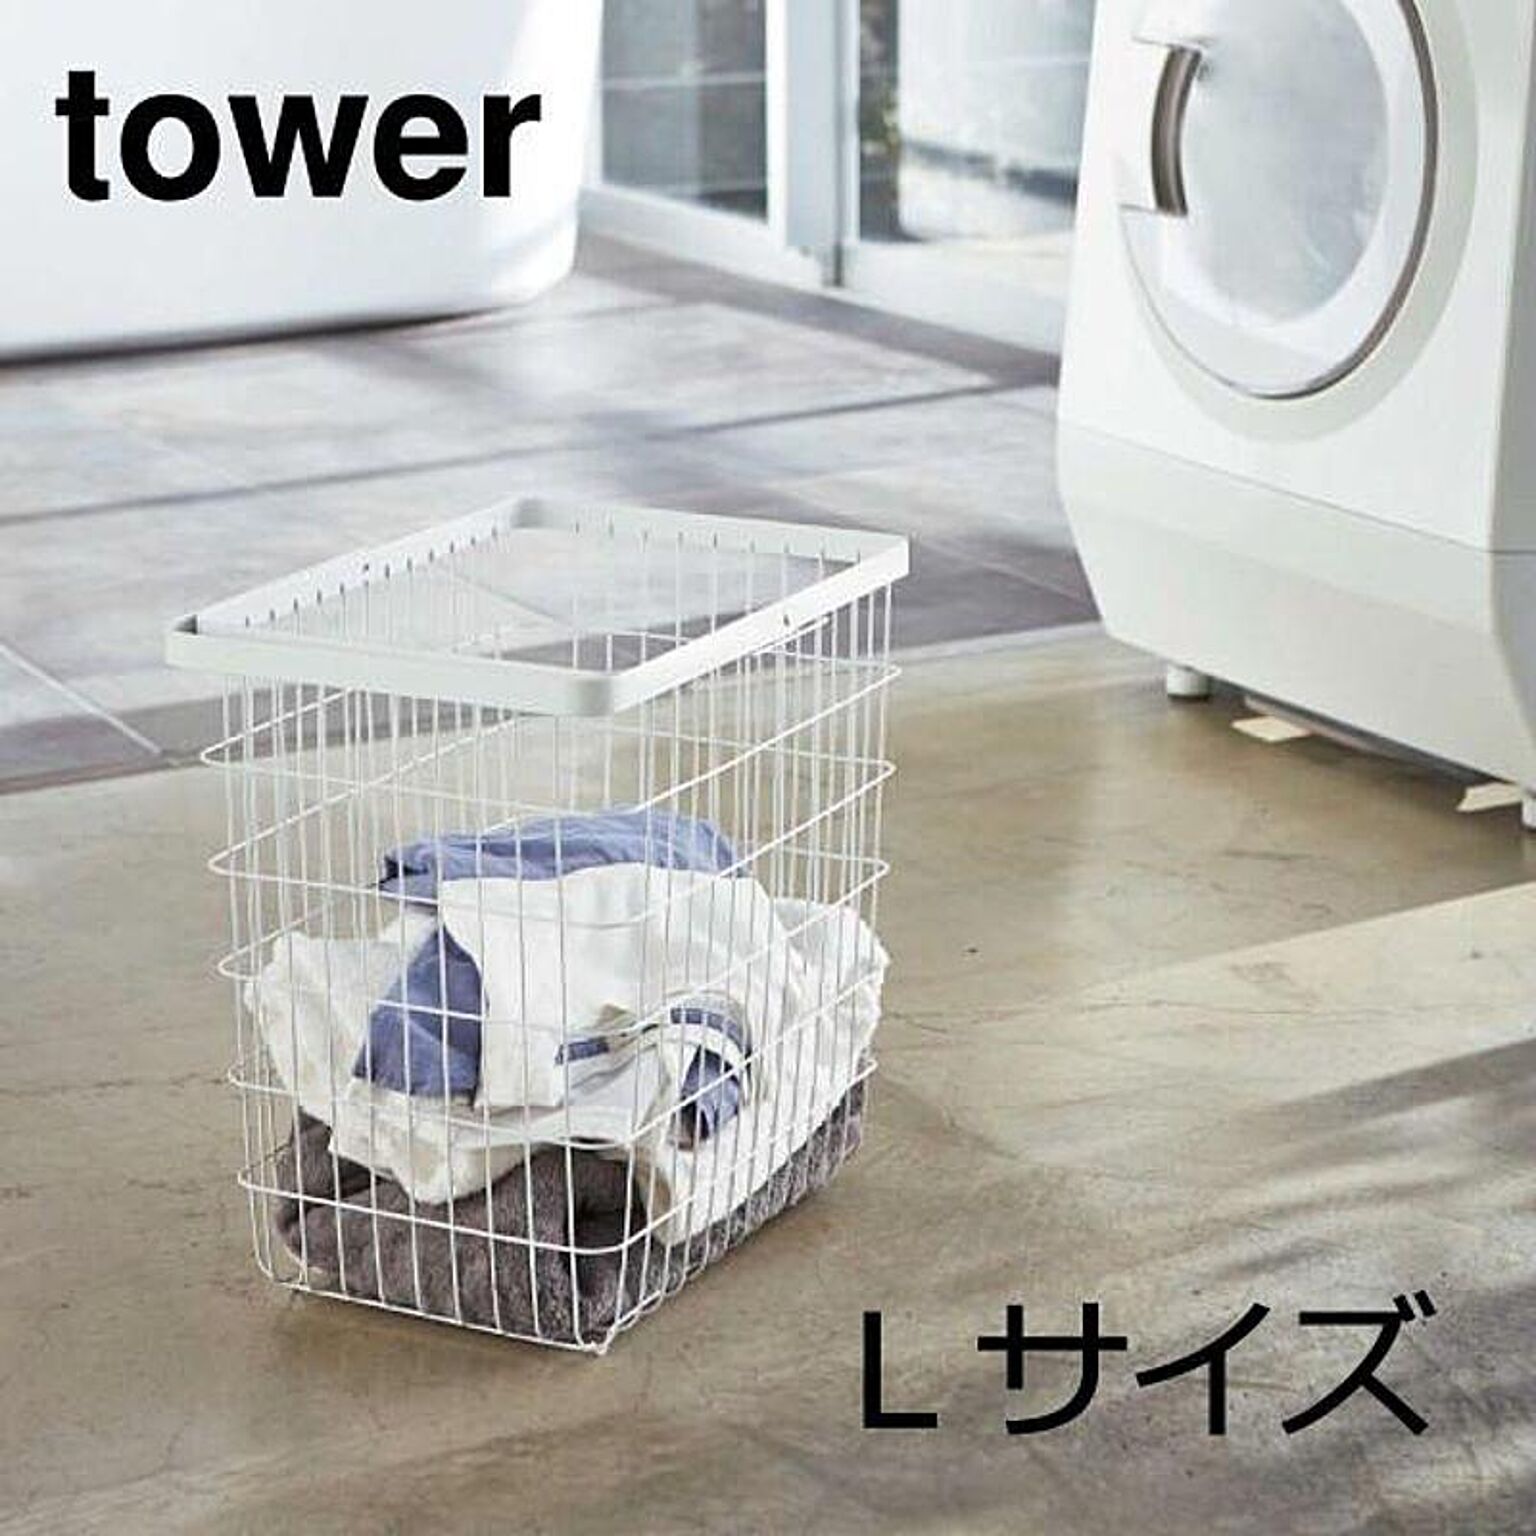 山崎実業 ランドリーワイヤーバスケット L タワー tower